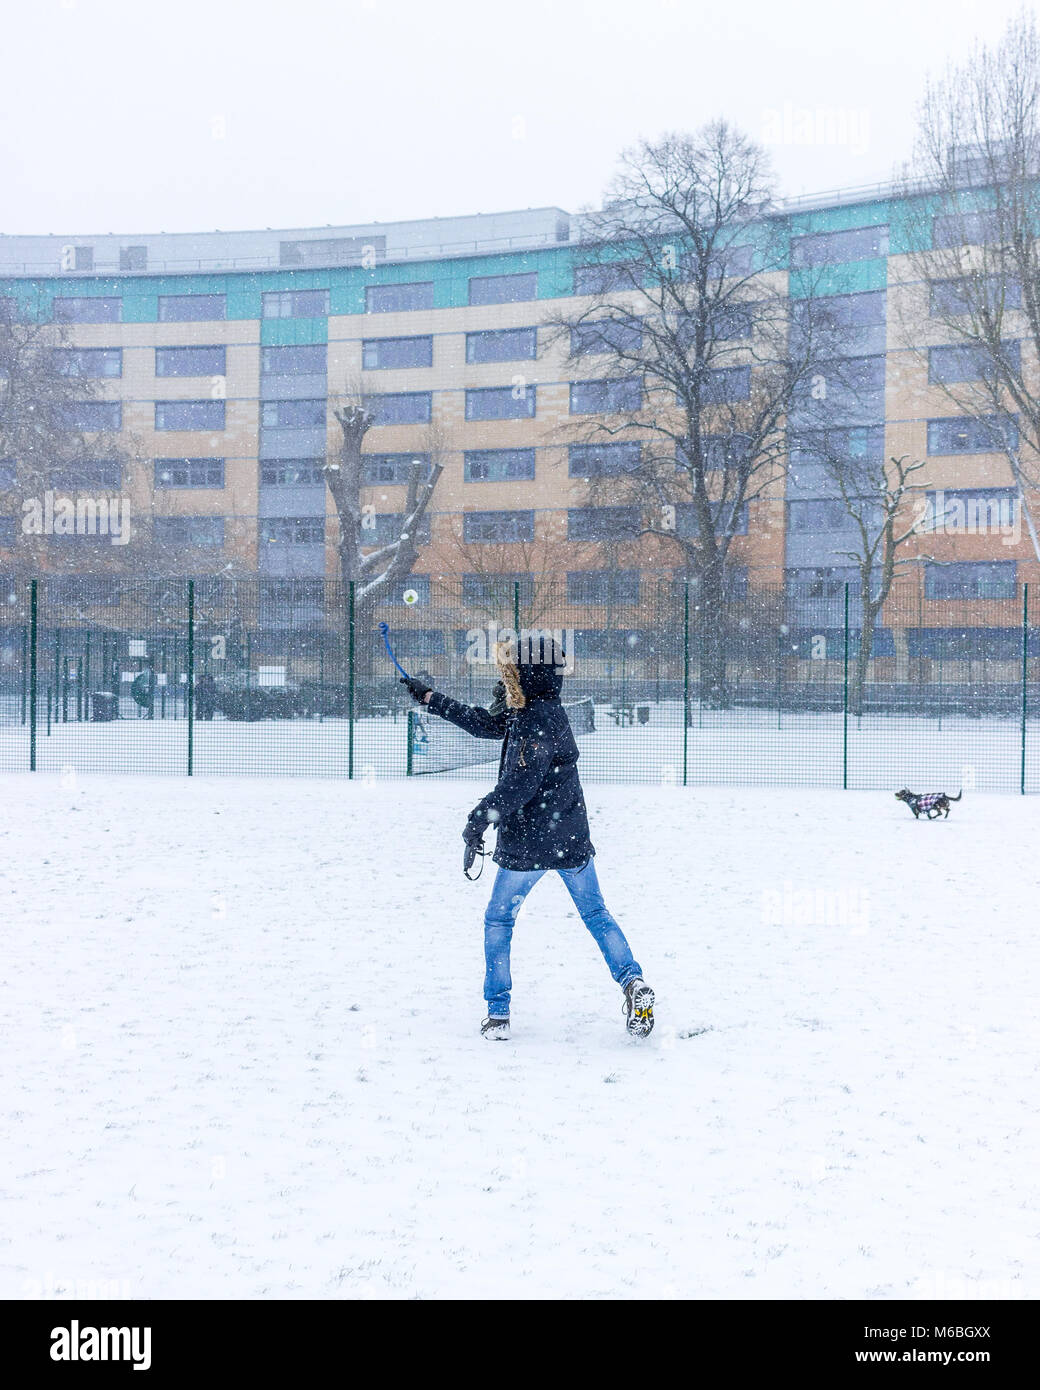 L'uomo getta una palla per il suo cane in un giorno di neve in campi Ladywell, Londra Foto Stock